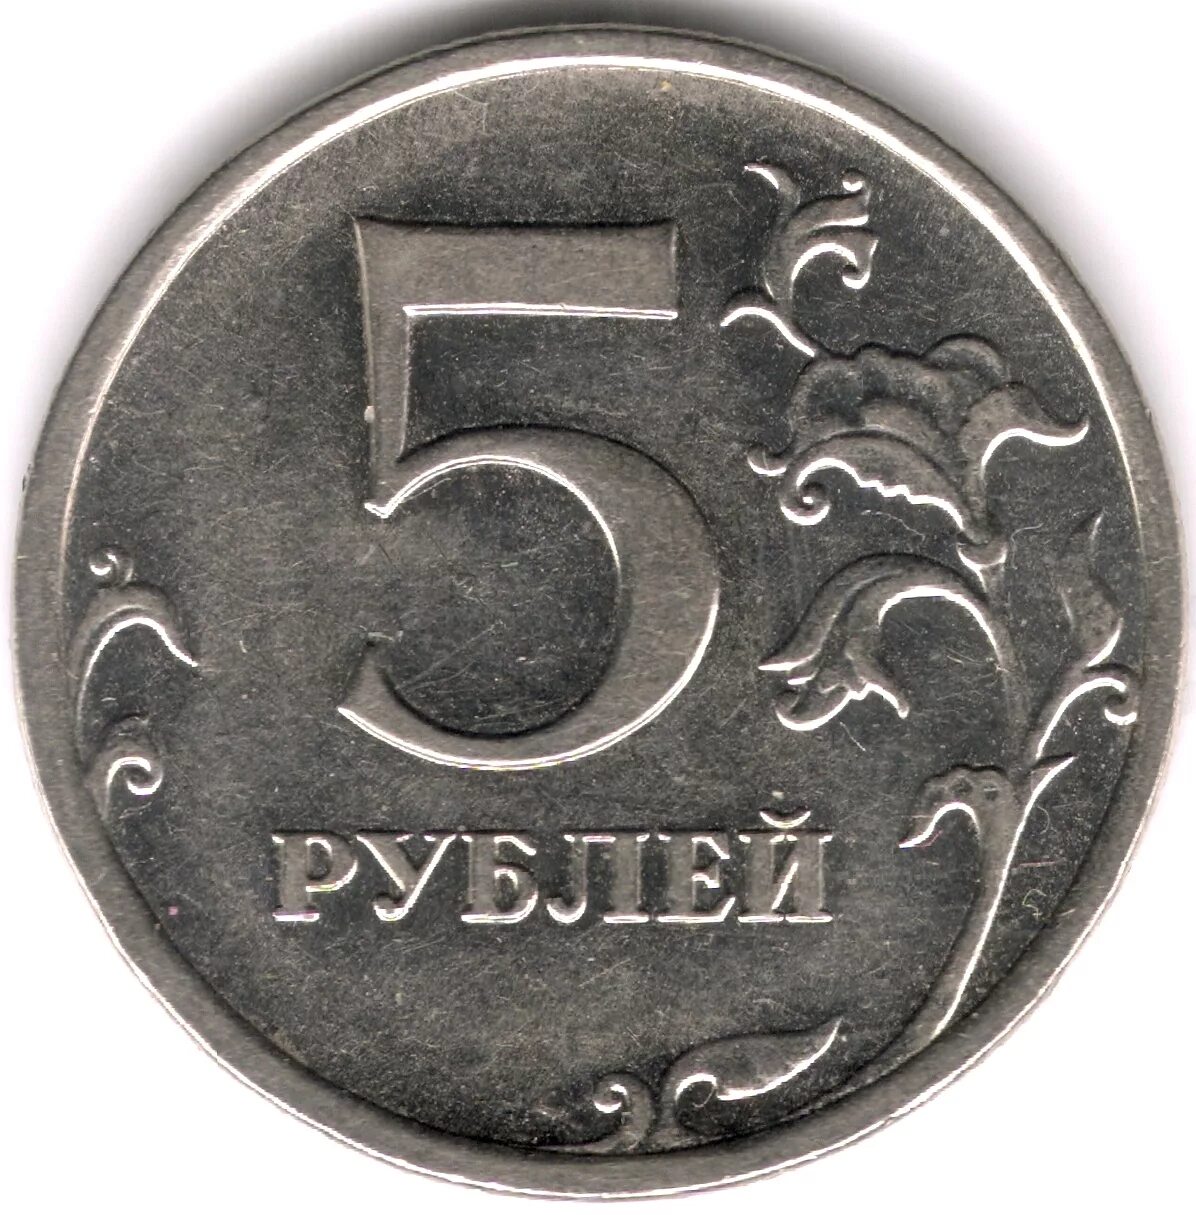 Рубль 5 31. 5 Рублей 1998 ММД шт.а1 и шт.а2. Редкие монеты 5 рублей СПМД. Монета 5 руб. 2012 г. ММД магнитная.. Ценные пятирублевые монеты.